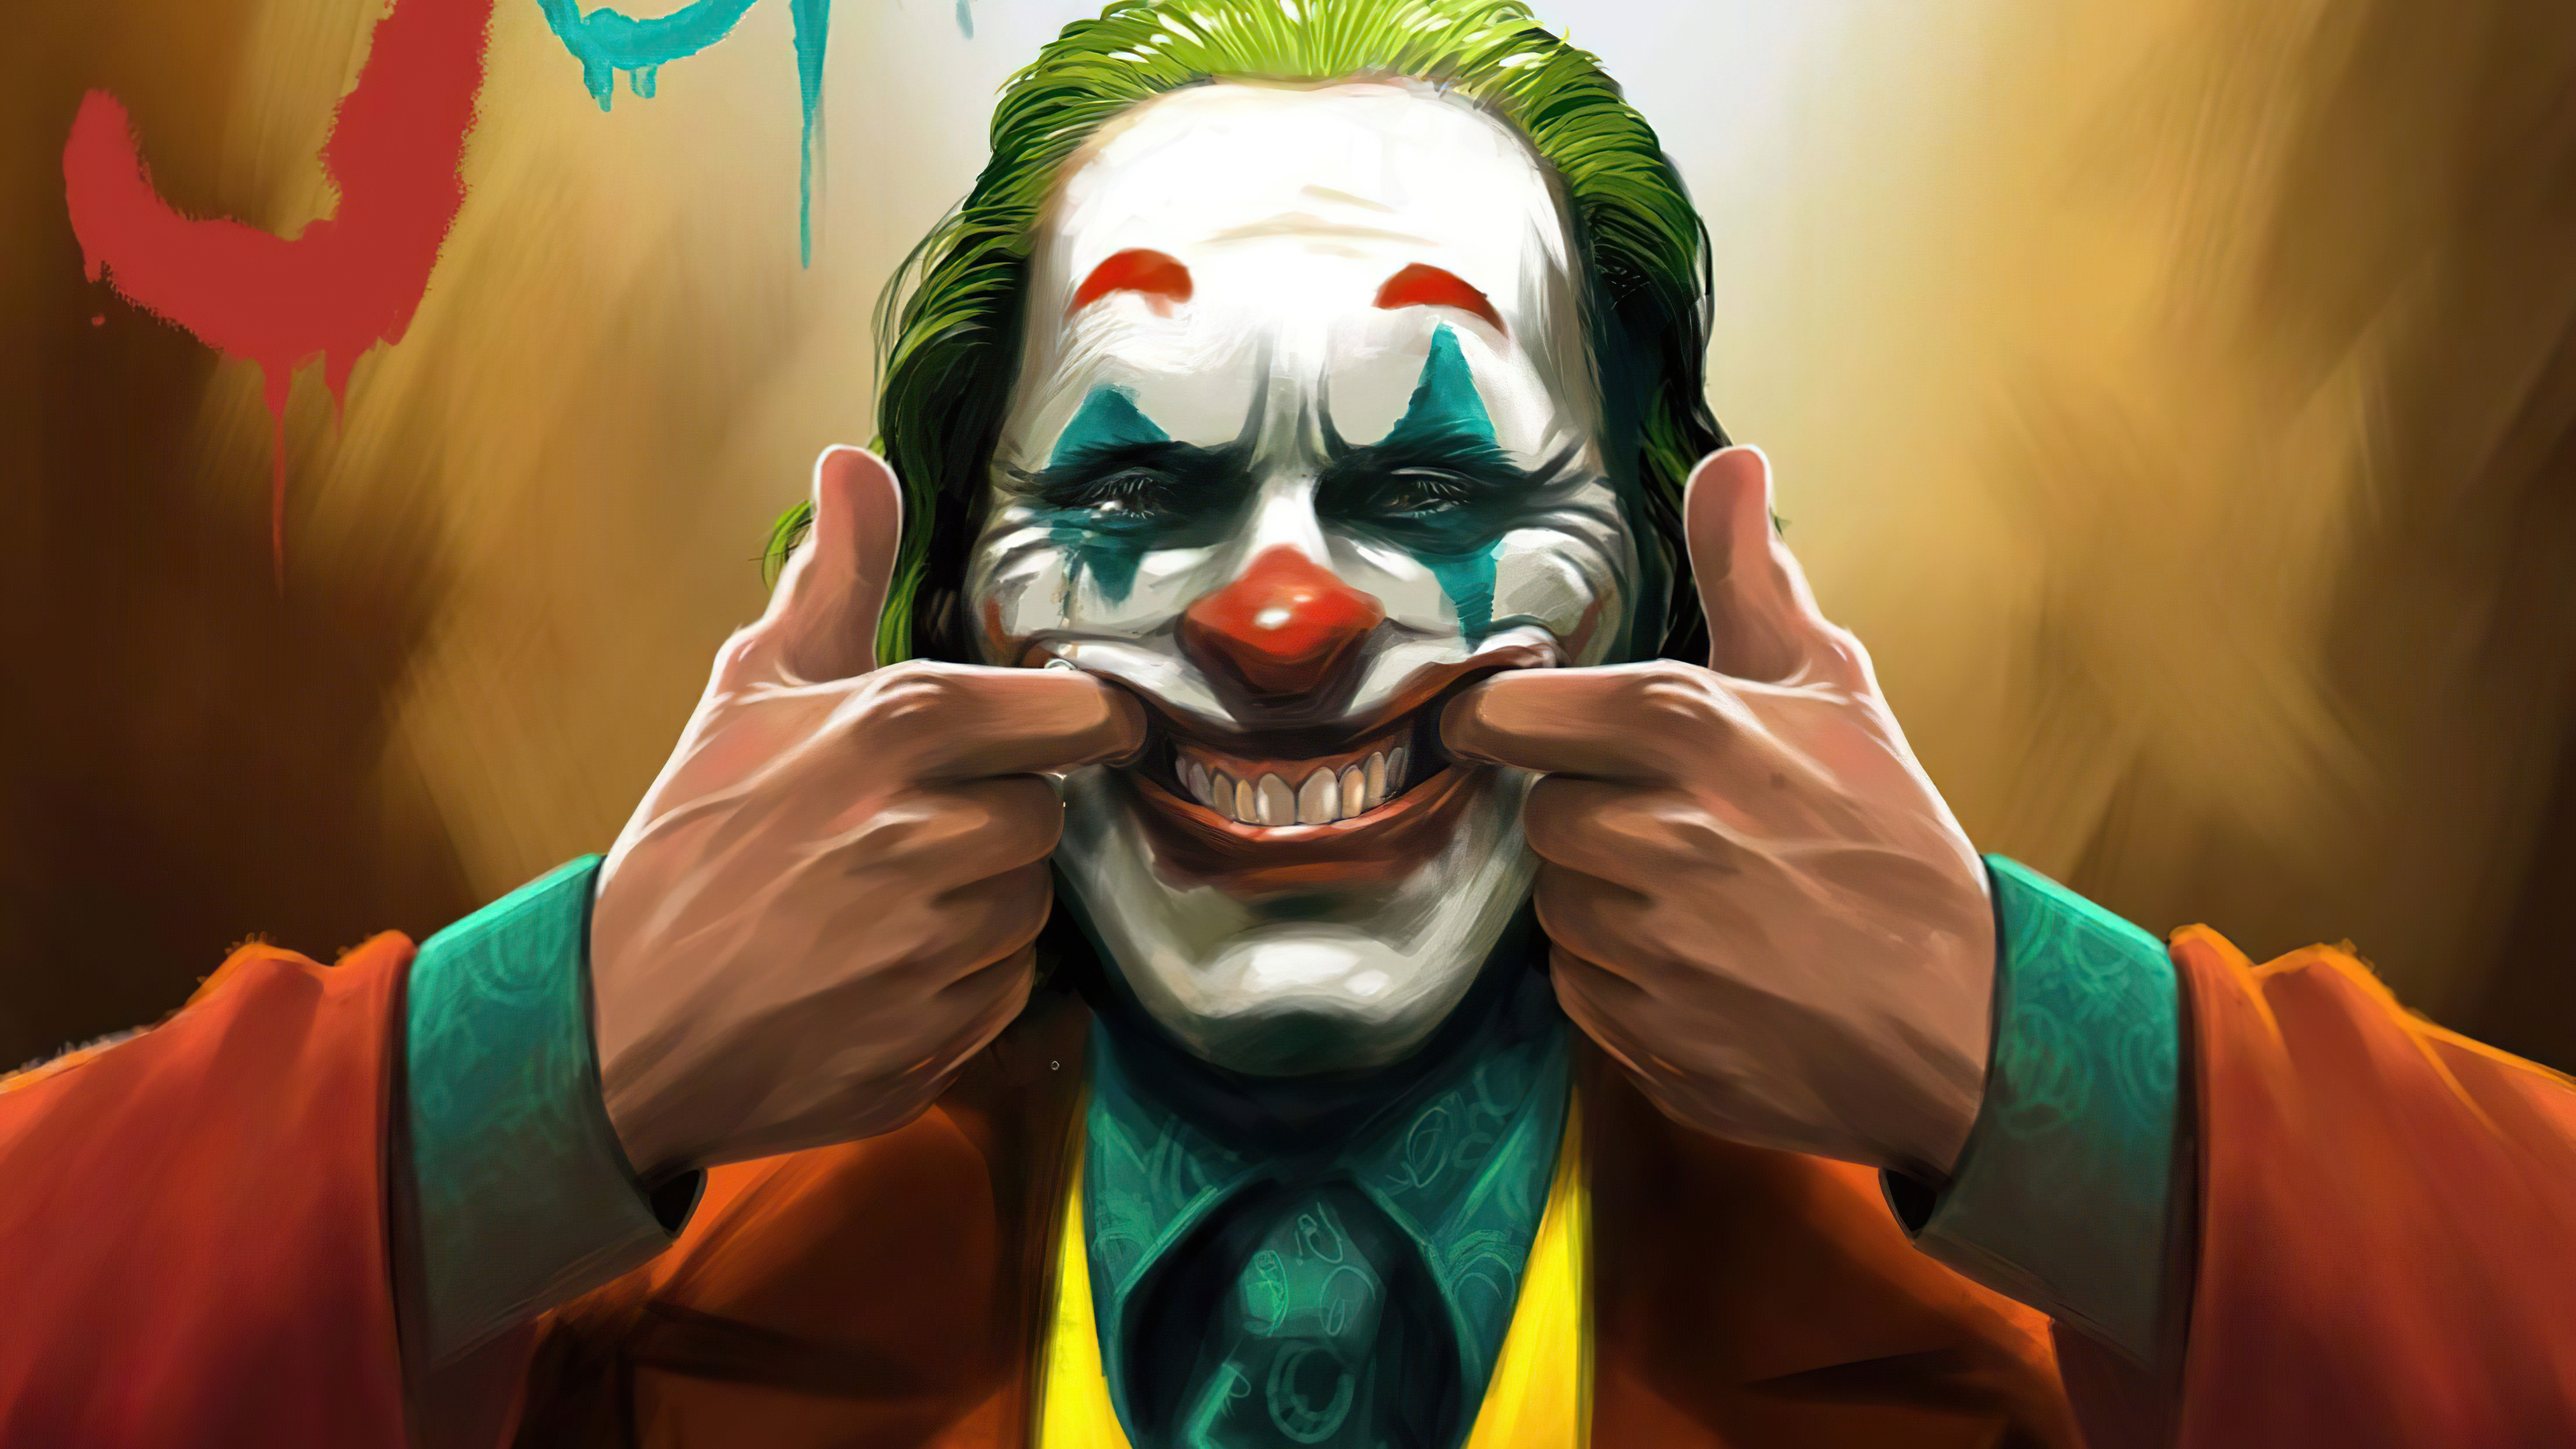 Joker 4k Ultra HD Wallpaper by tanat fakon